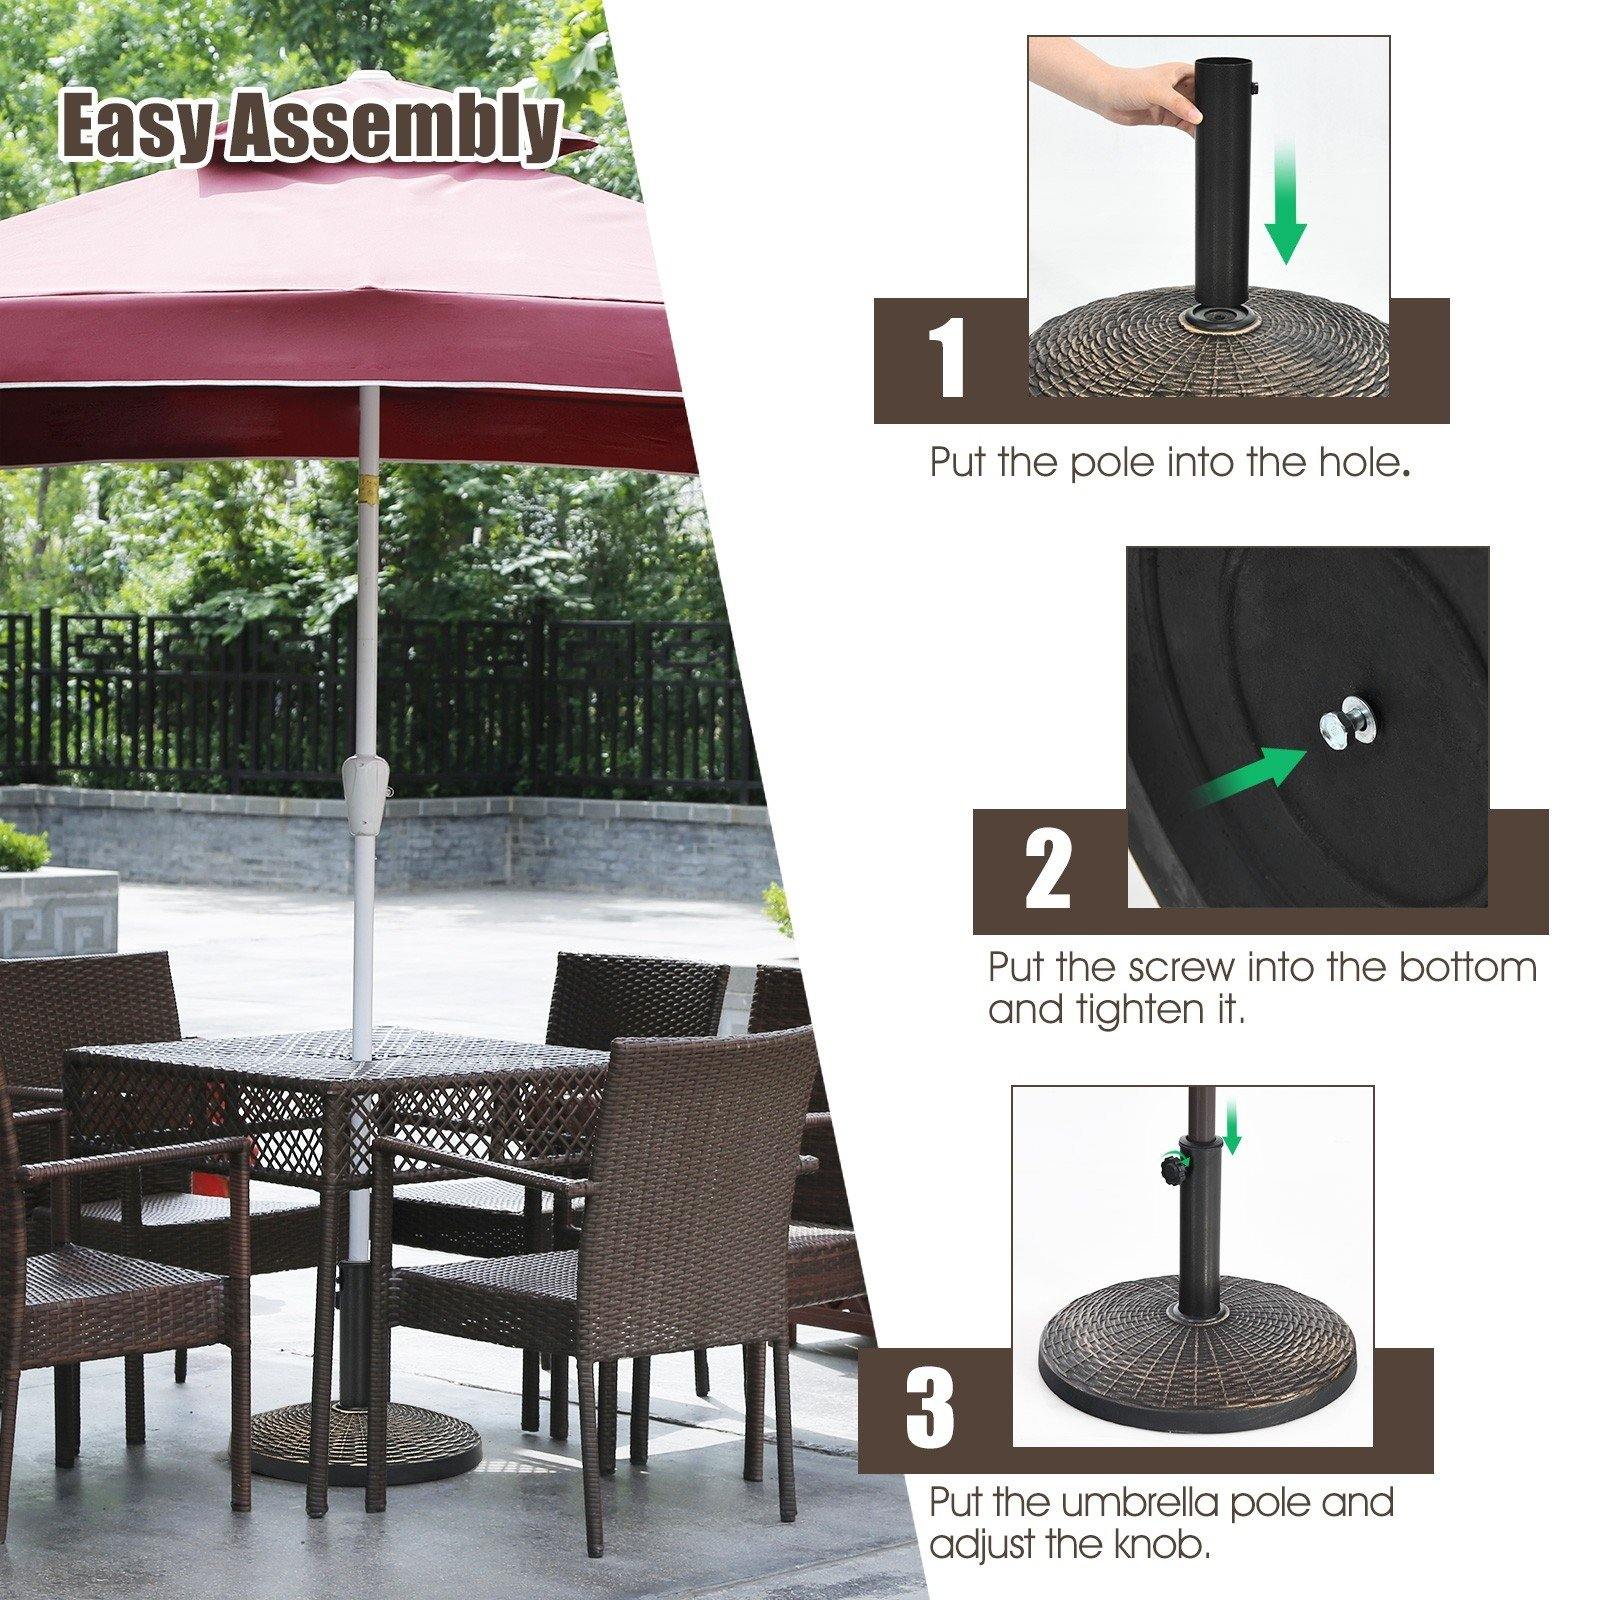 22 LBS Patio Umbrella Base, 18 Inch Round Outdoor Umbrella Stand - Giantexus